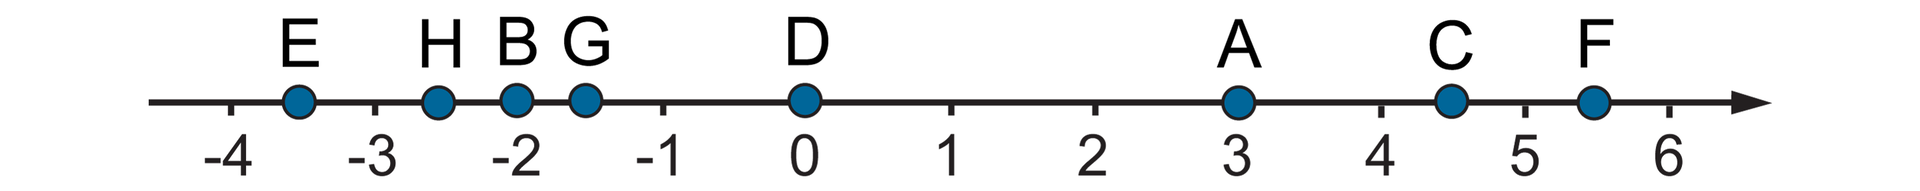 Rysunek osi liczbowej z zaznaczonymi punktami od -4 do 6. Na osi zaznaczone punkty A, B, C, D, E, F, G, H o współrzędnych: A =3, B =-2, C = cztery i jedna druga, D =0, E = minus trzy i jedna druga, F = pięć i jedna druga, G = minus jeden i jedna druga, H = minus dwa i jedna druga.